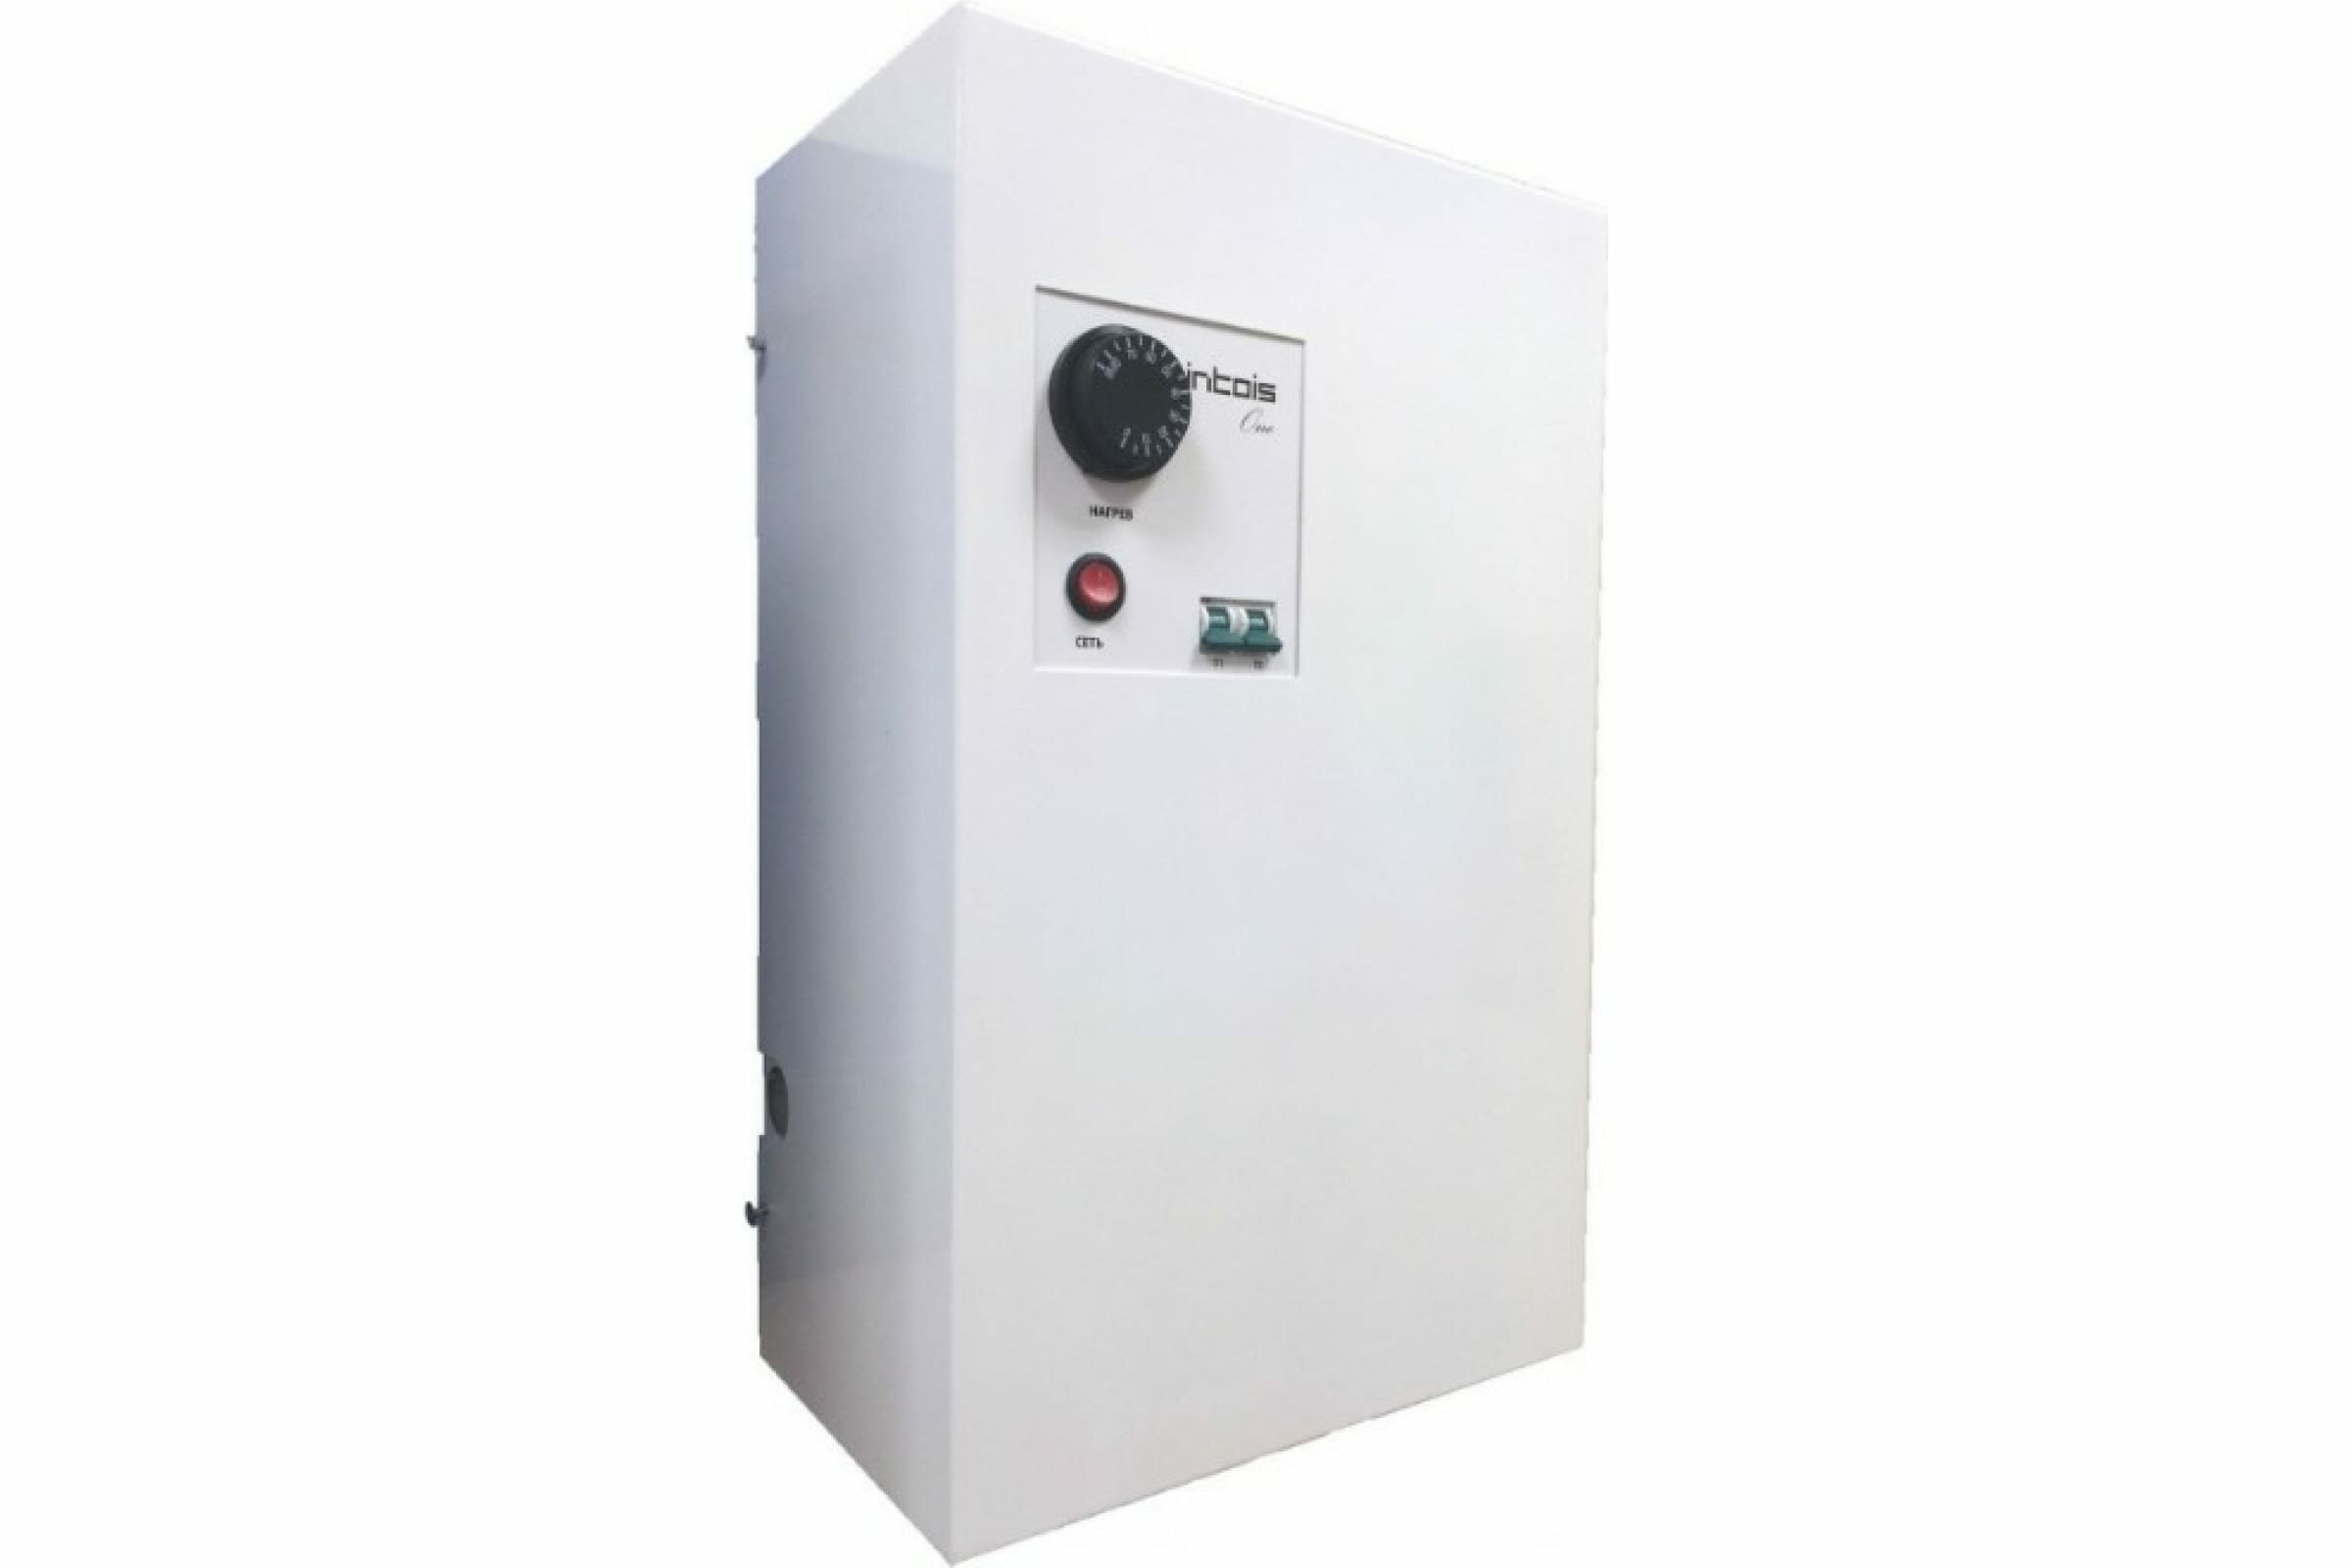 Электрический котел отопления, электрокотел Интоис One, 24 кВт, настенный, одноконтурный.